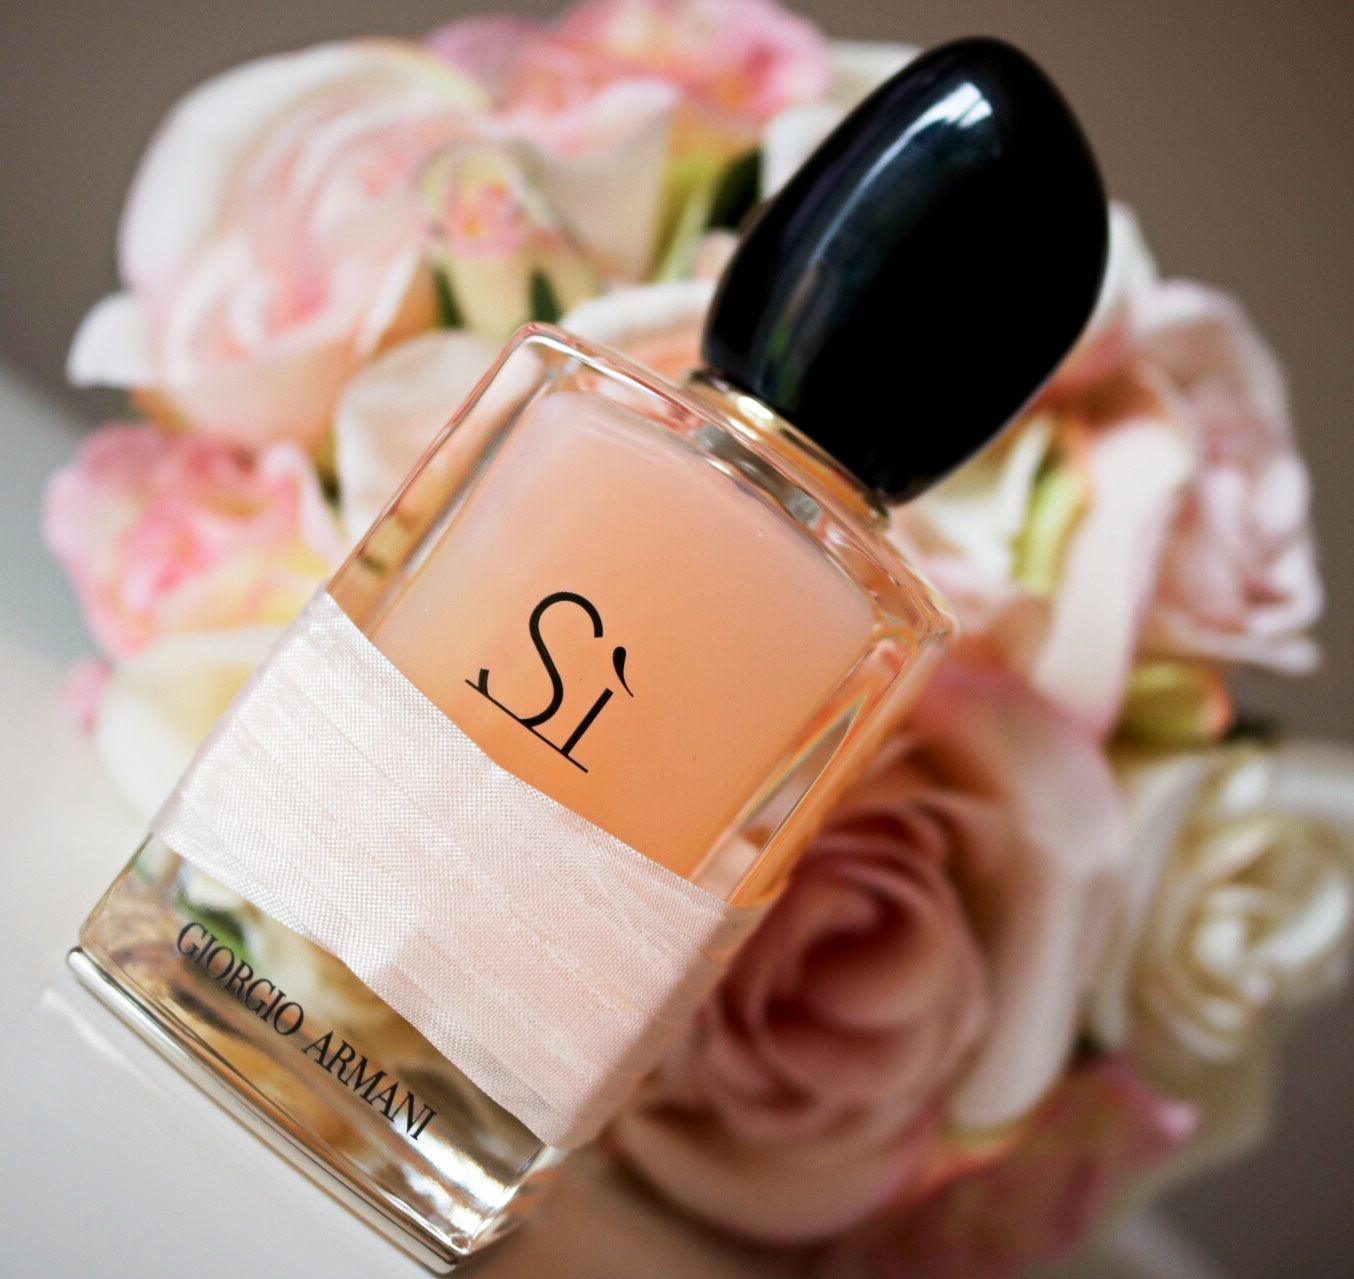 Giorgio Armani Sì Eau De Parfum - Nước hoa chính hãng 100% nhập khẩu Pháp,  Mỹ…Giá tốt tại Perfume168